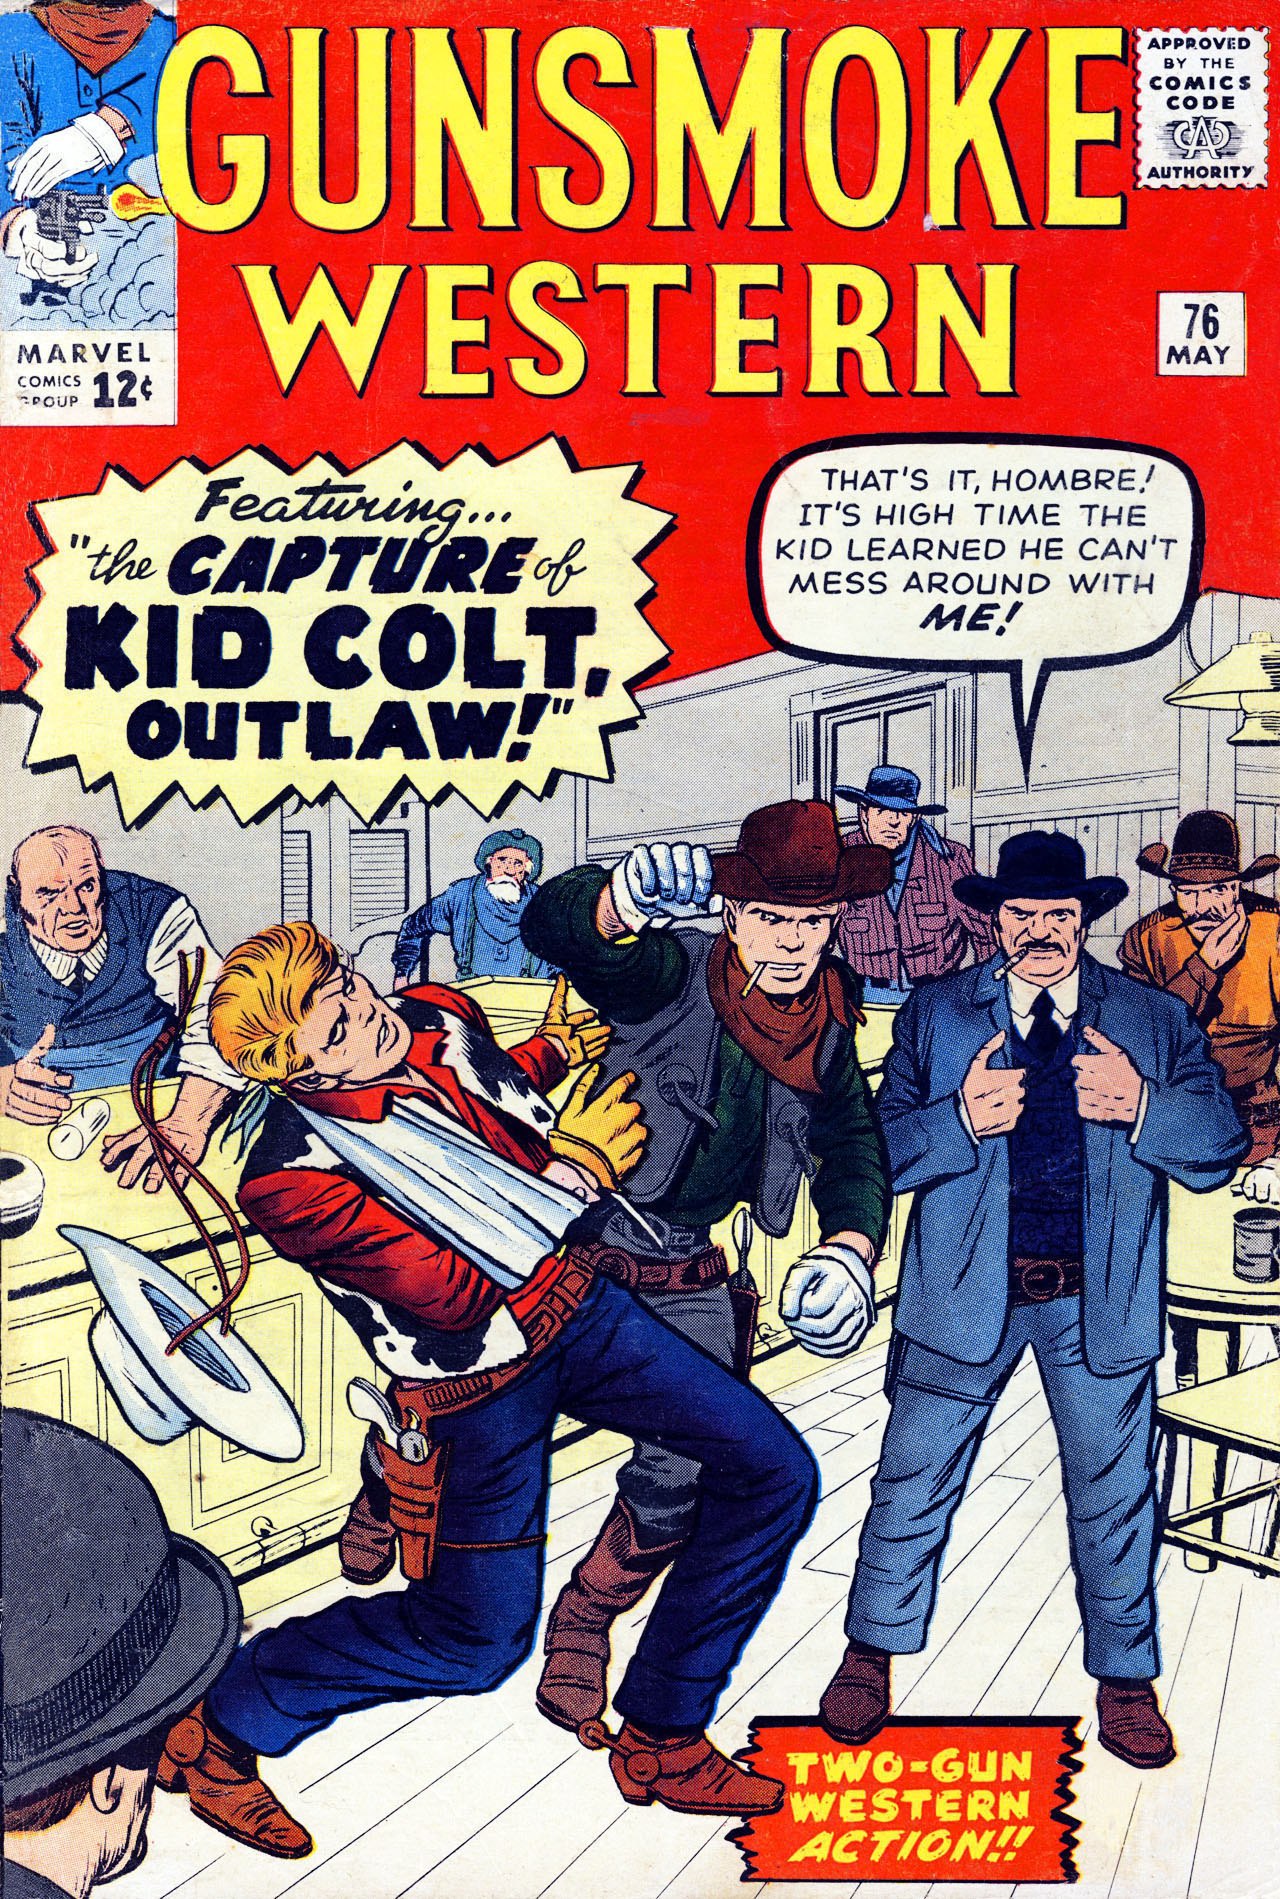 Read online Gunsmoke Western comic -  Issue #76 - 1